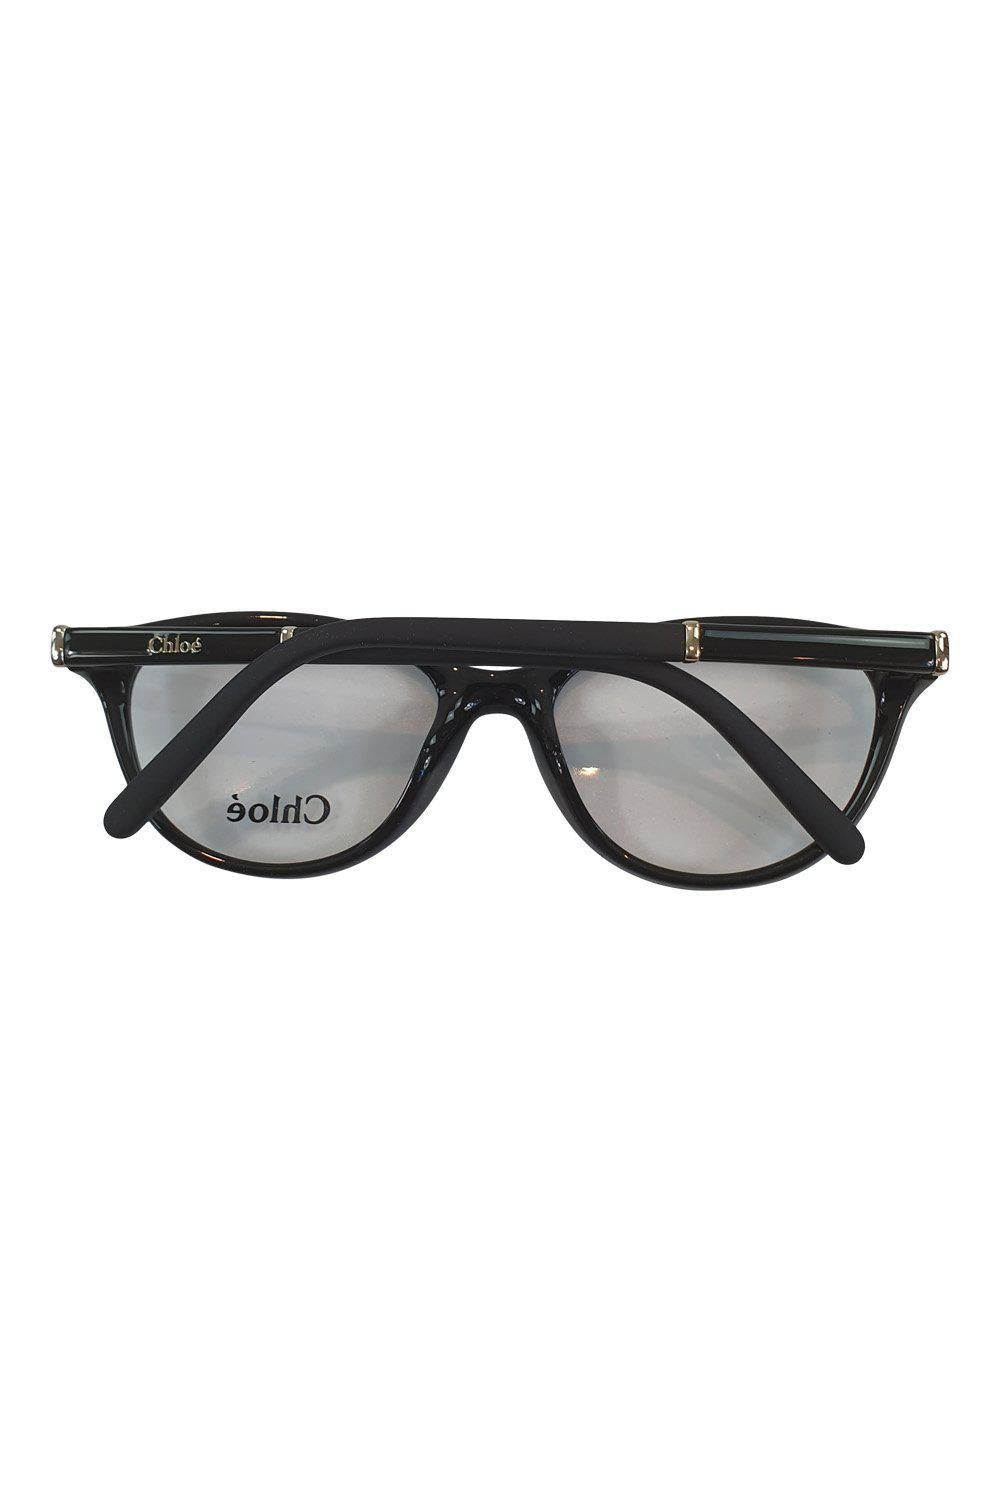 CHLOE CE2677 001 Black Oval Full Rim Glasses Frames-Chloe-The Freperie